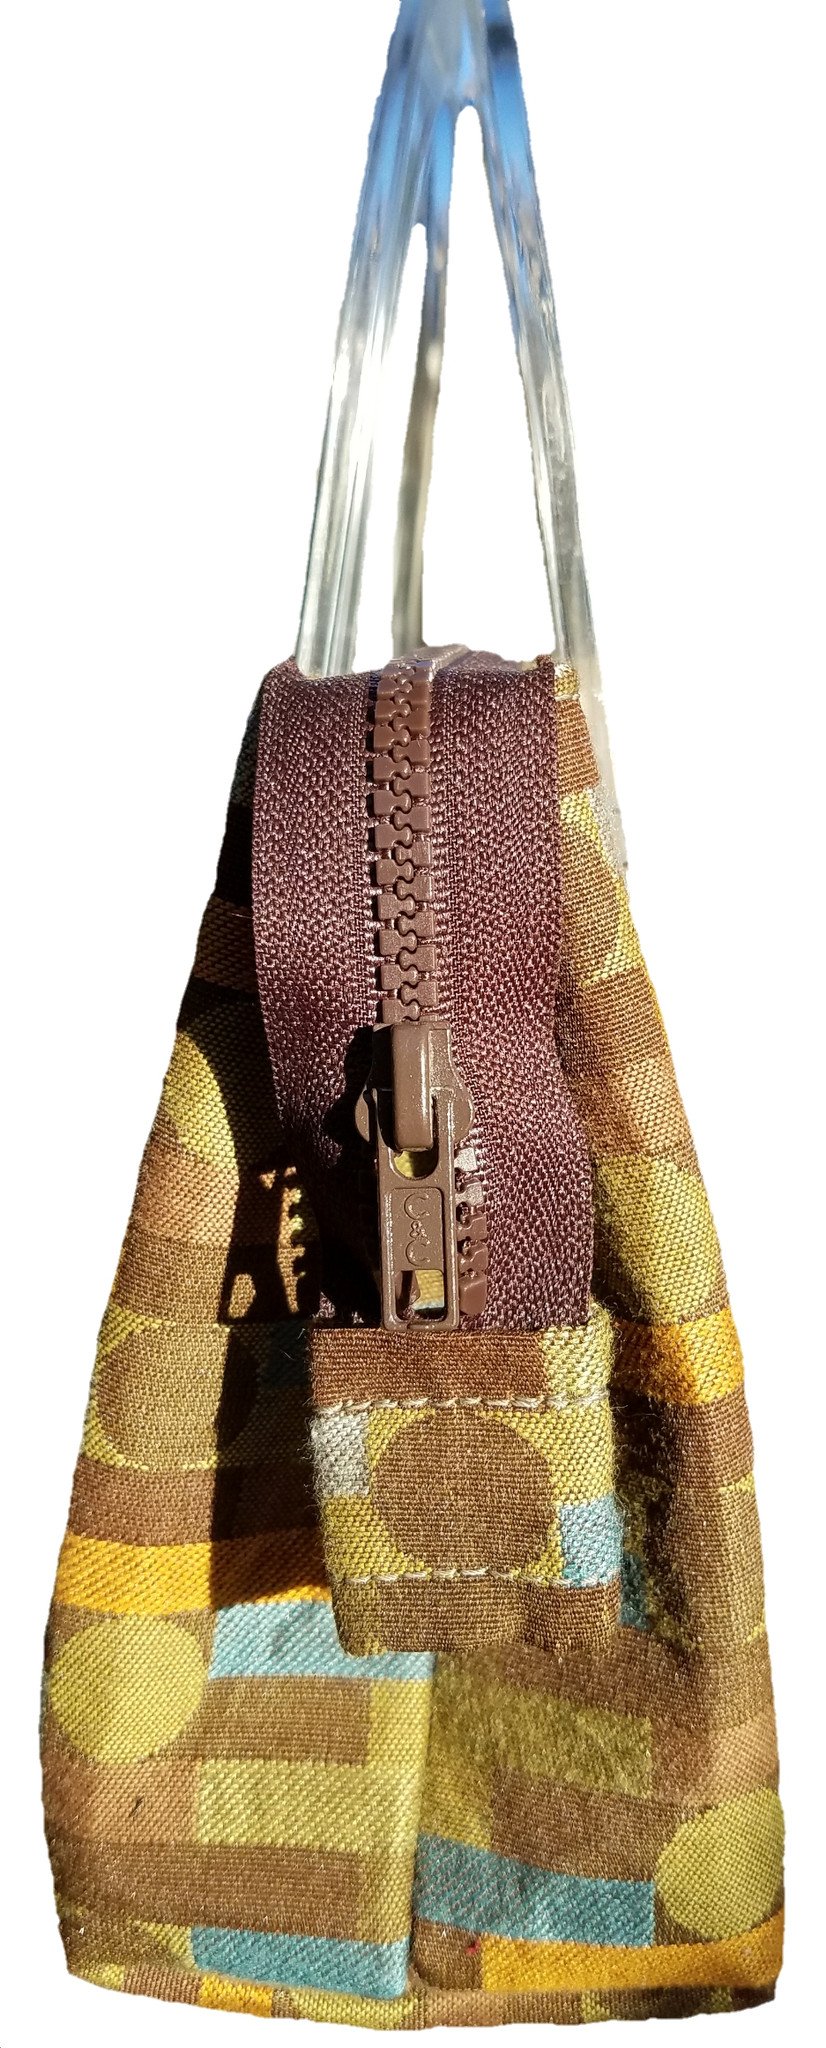 Liz Jordan Designs - Handcrafted - Little handbag - Custom made - made ...